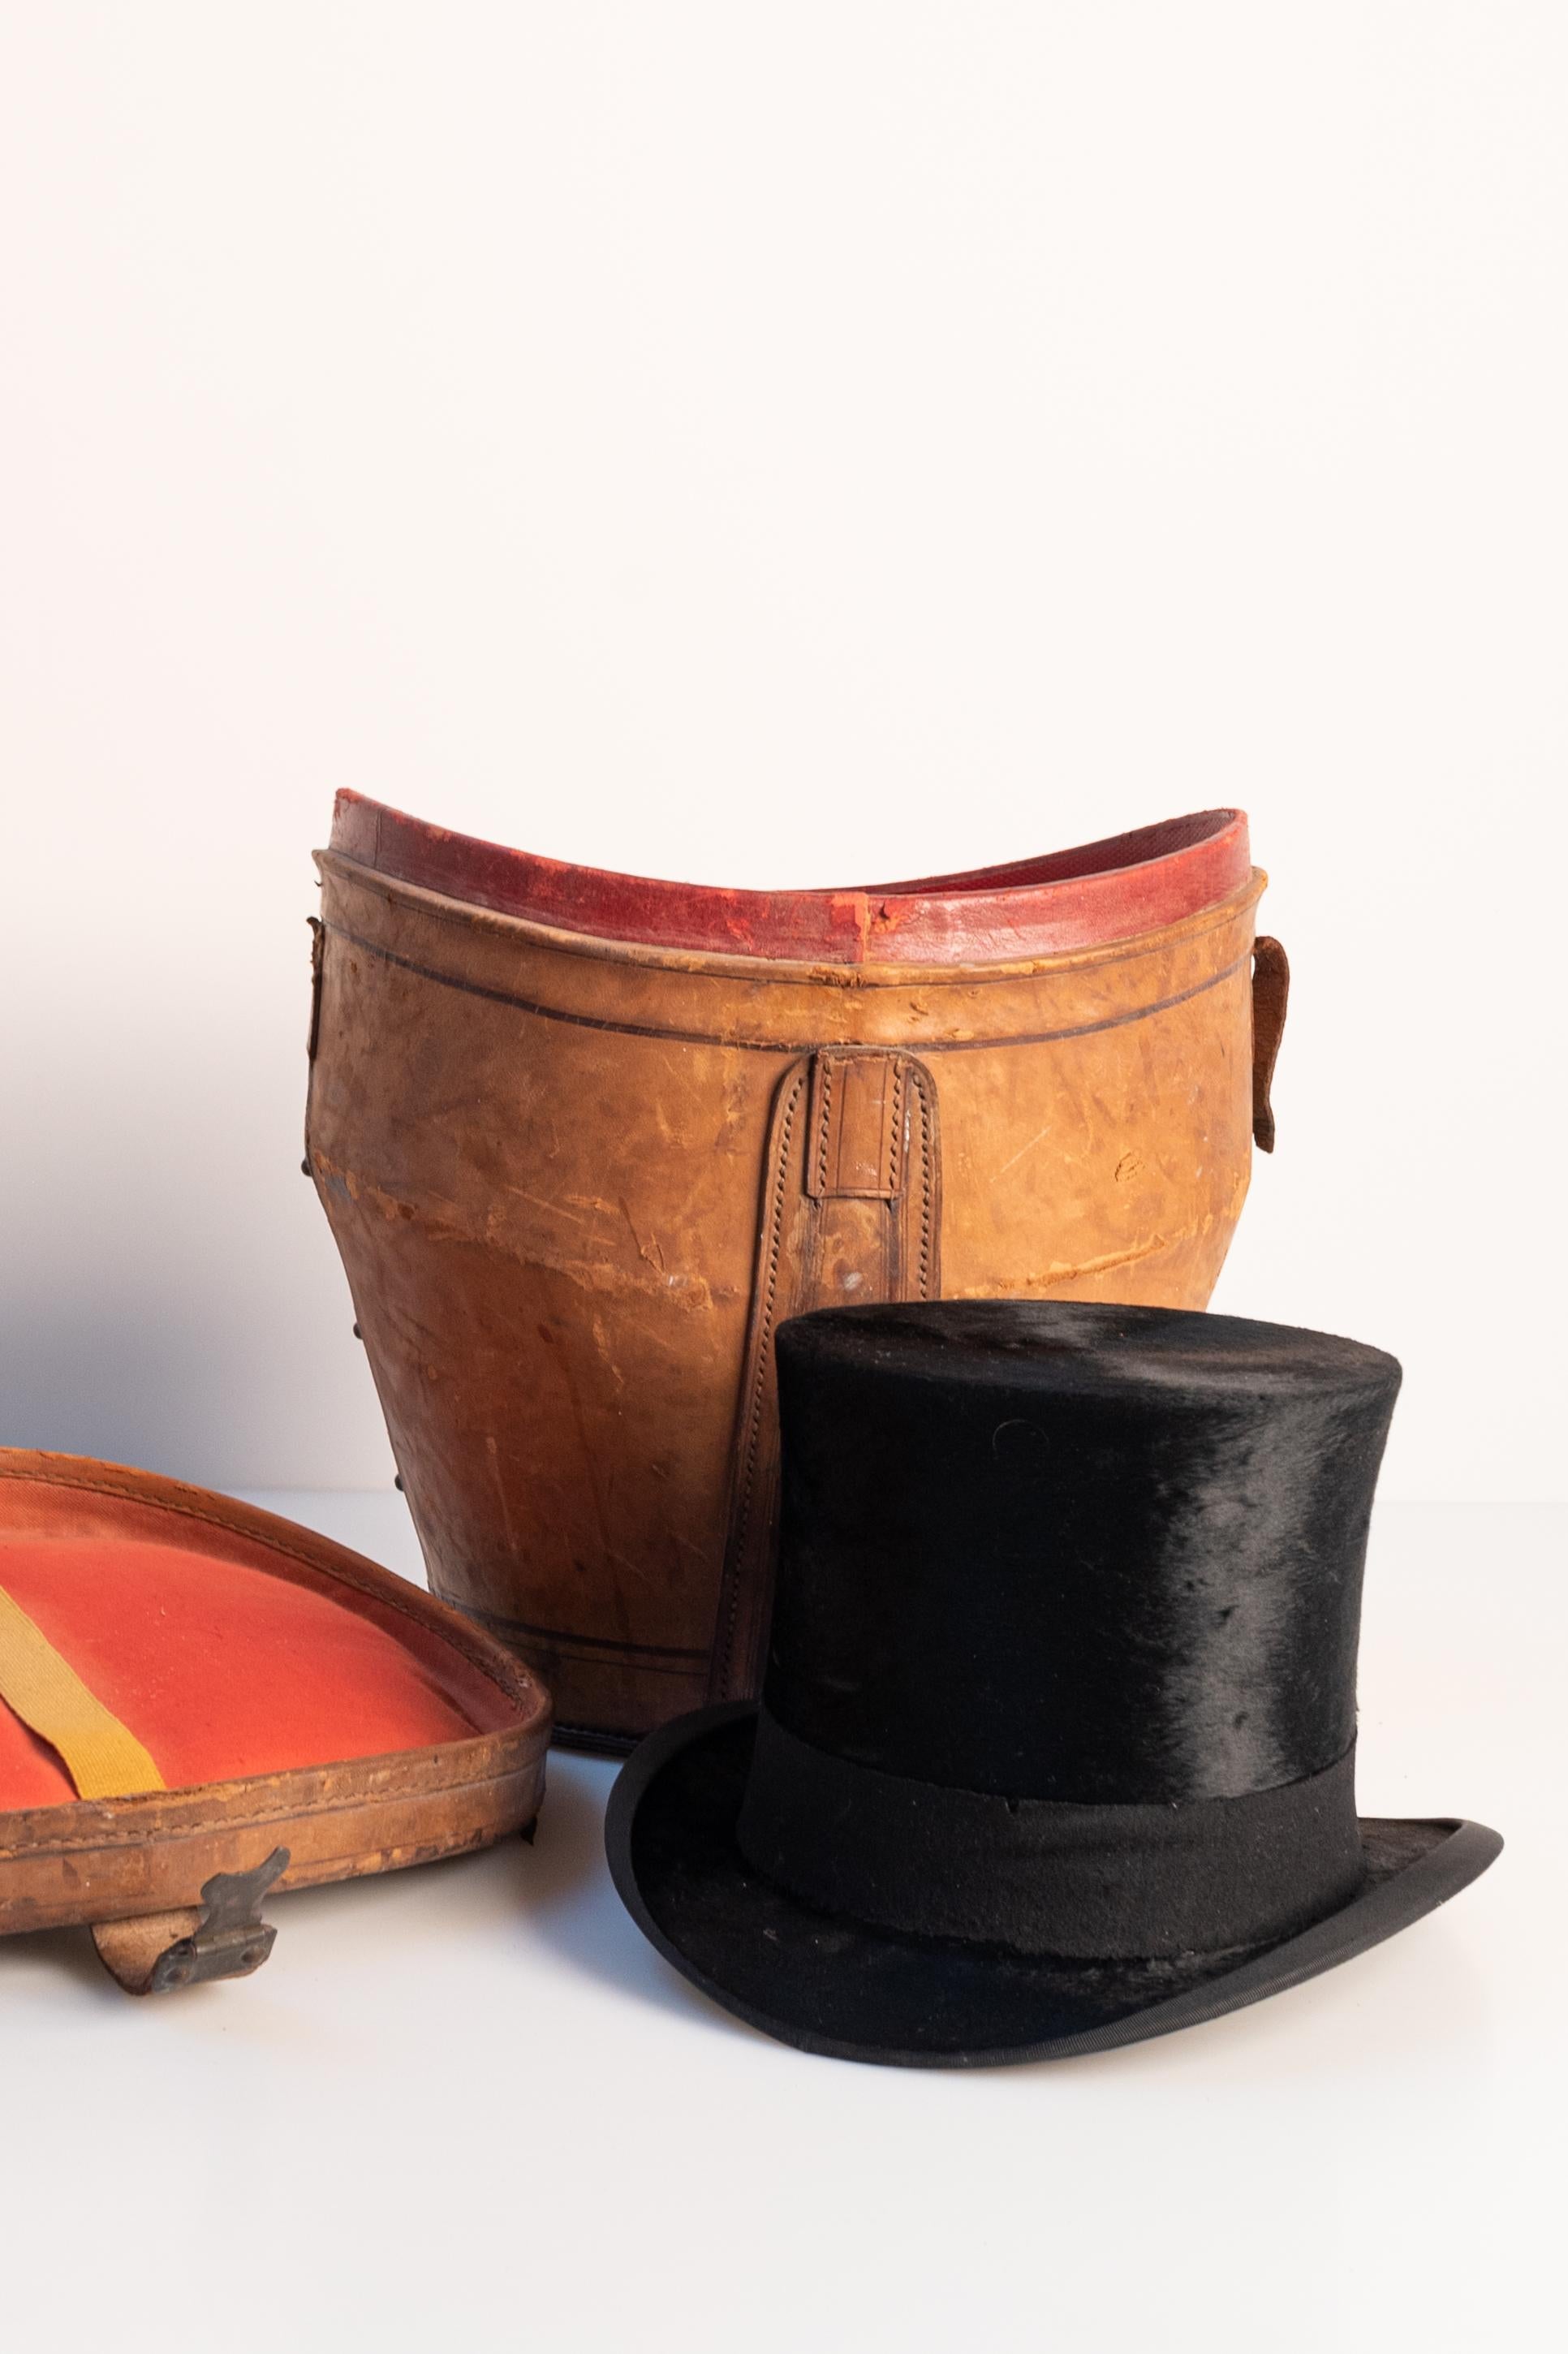 Moleskin-Hut, mit lederner Hutschachtel (Ende 19. - Anfang 20. Jahrhundert). Der Hut wurde von Berteil Paris (Frankreich) hergestellt,  ein etabliertes Haus, das seit 1840 besteht. 

Abmessungen: 
Der Hut mit Krempe: 25 cm B x 29 cm T
Der Hut ohne